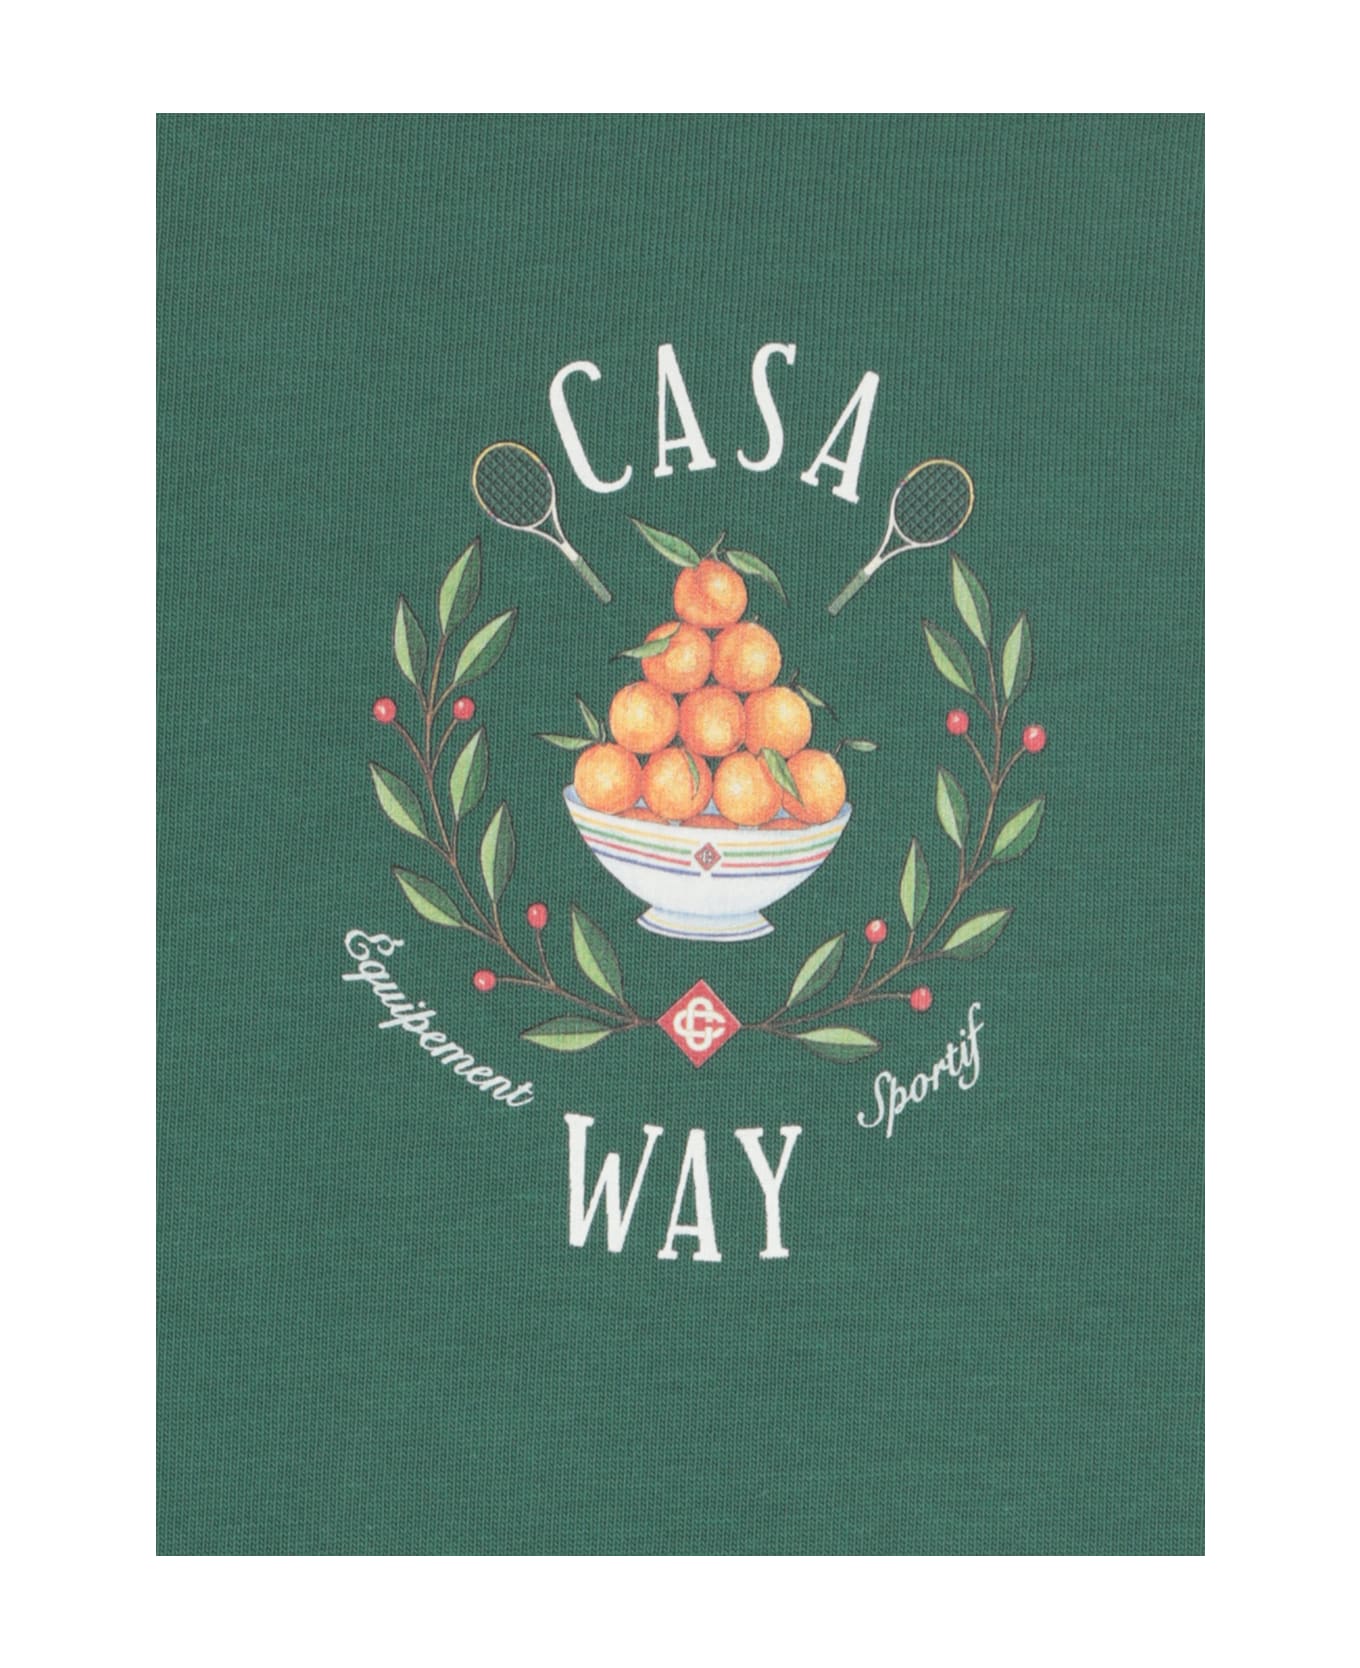 Casablanca Casa Way Printed T-shirt - Green シャツ